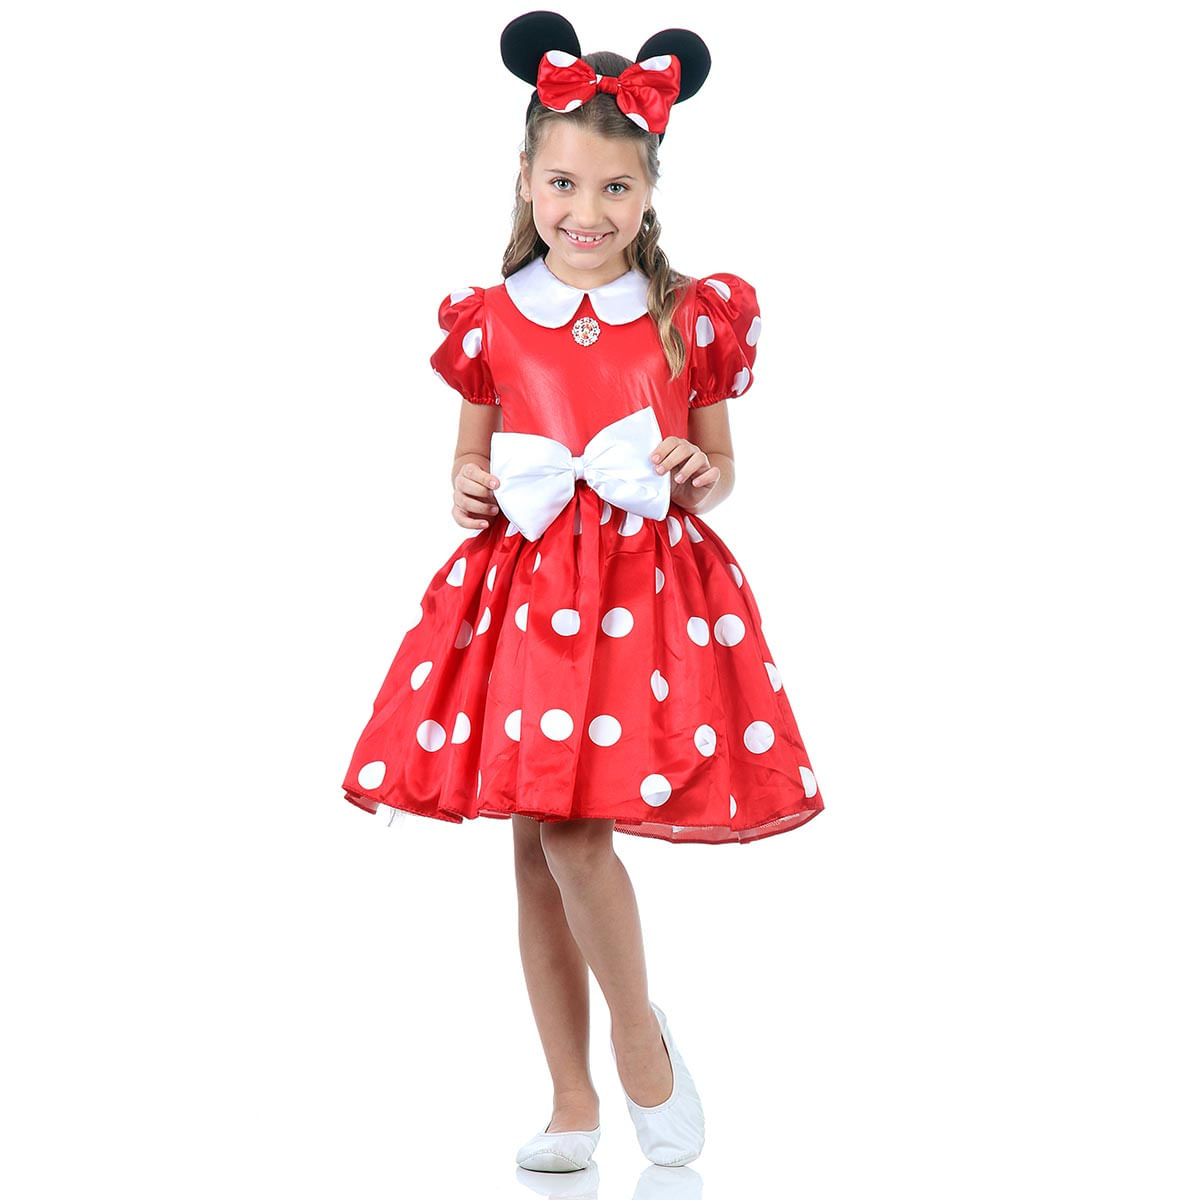 Fantasia Minnie Disney Infantil Vermelha P / UNICA